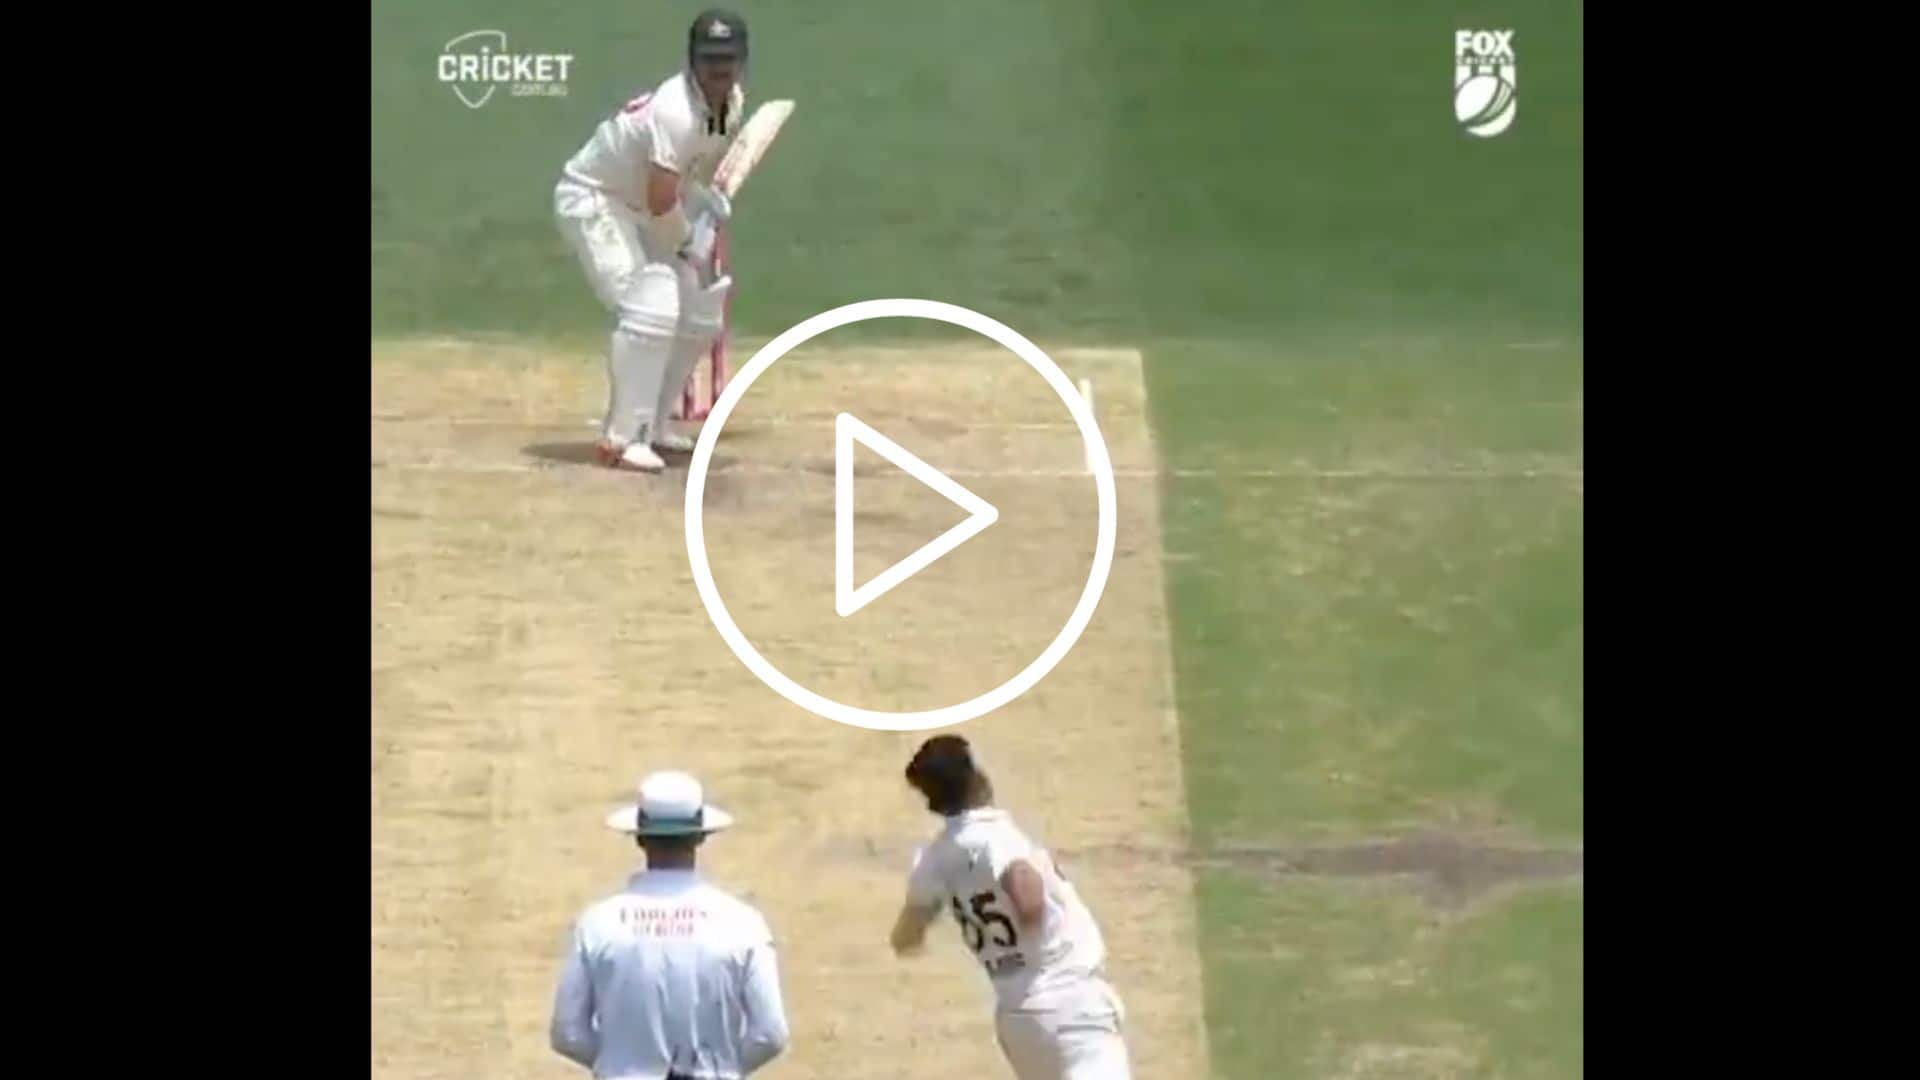 [Watch] Aamer Jamal's Fiery 6-Wicket Haul Dismantles Australia In SCG Test